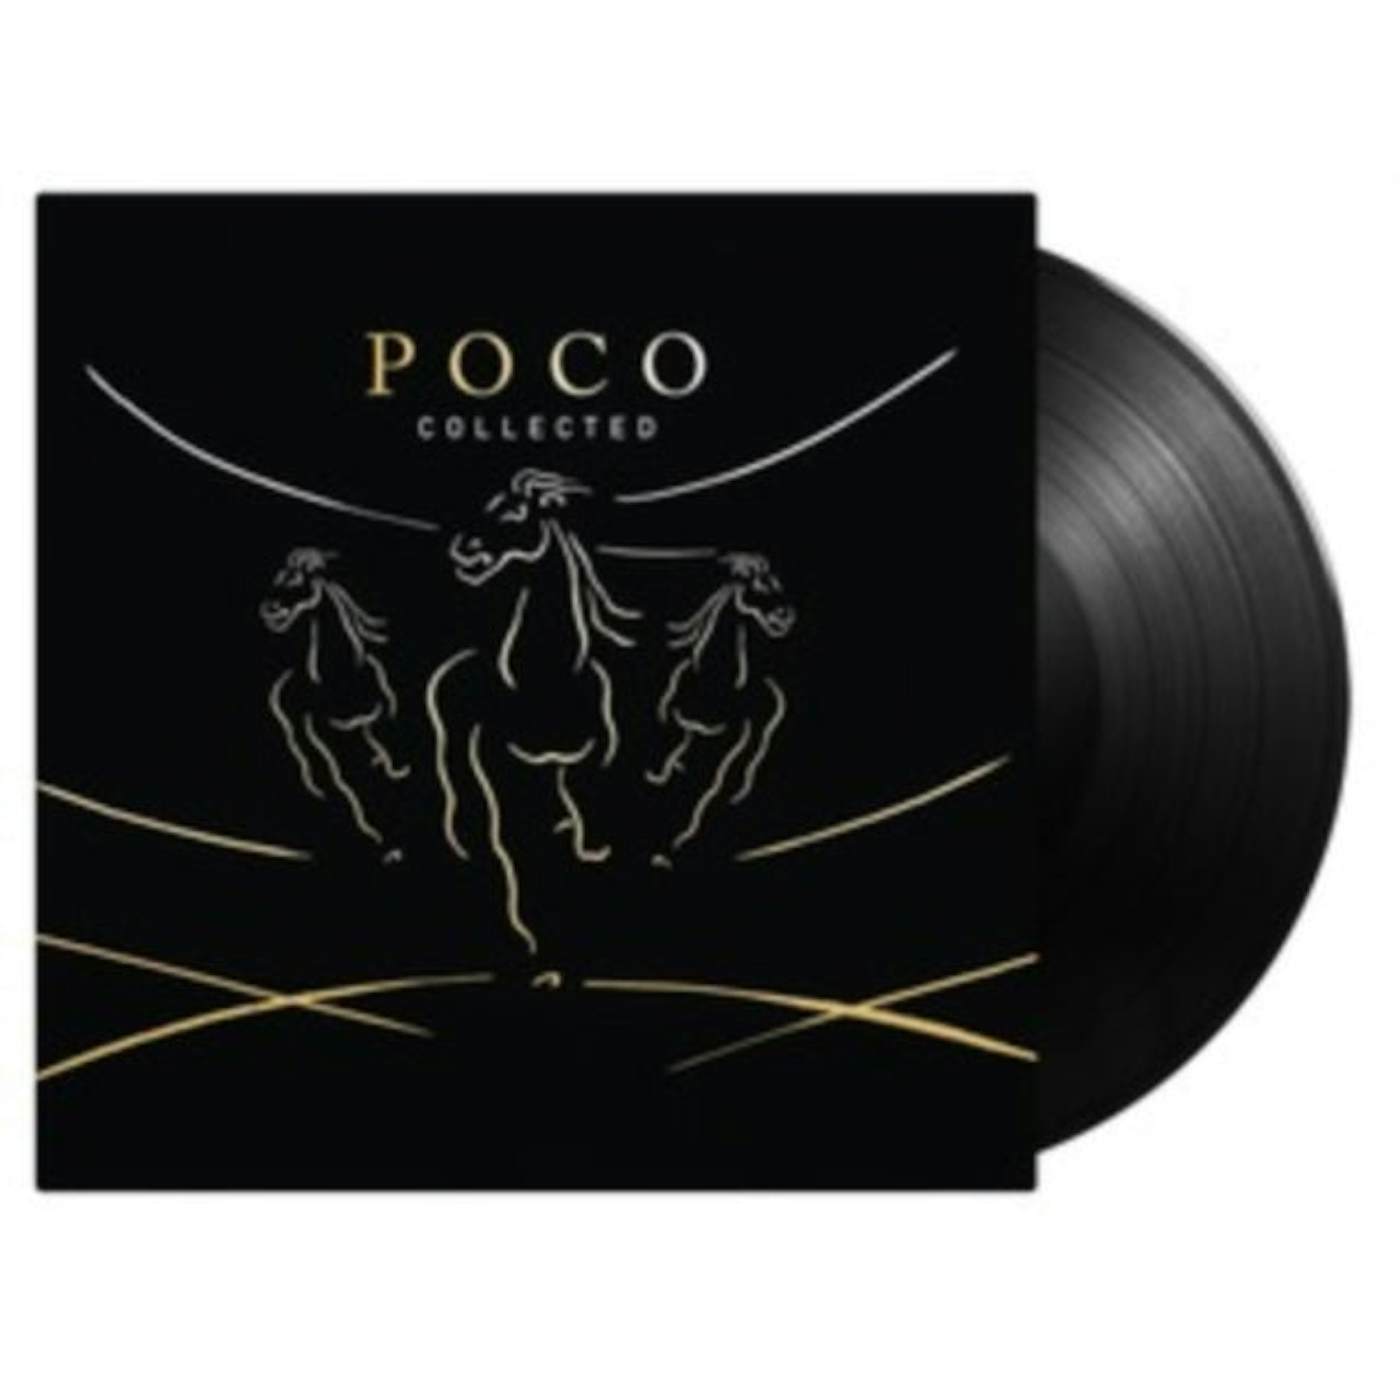 Poco LP - Collected (Vinyl)